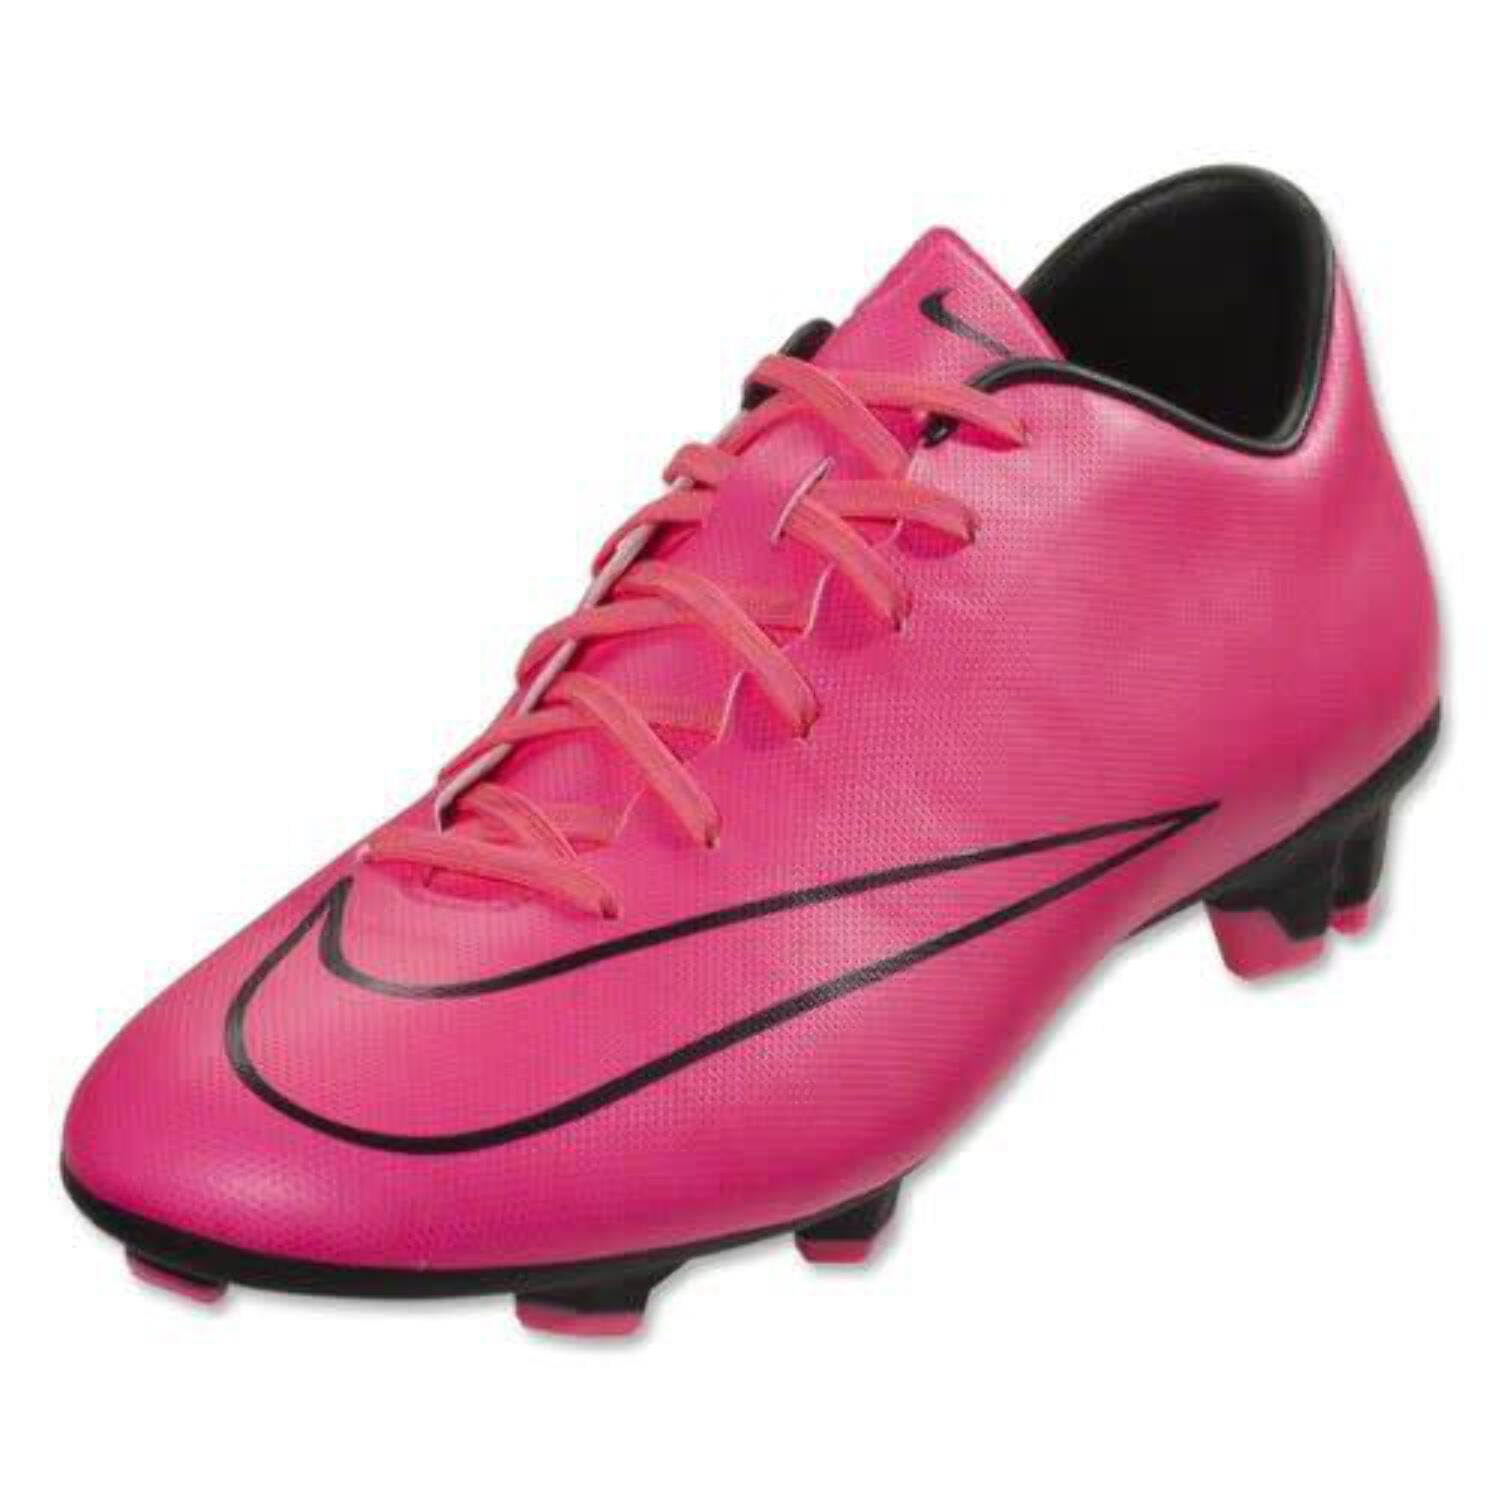 Casa de la carretera pavo compacto Nike Mercurial Victory V FG 2015 Soccer Shoes - Hyper Pink/Black 7 -  Walmart.com